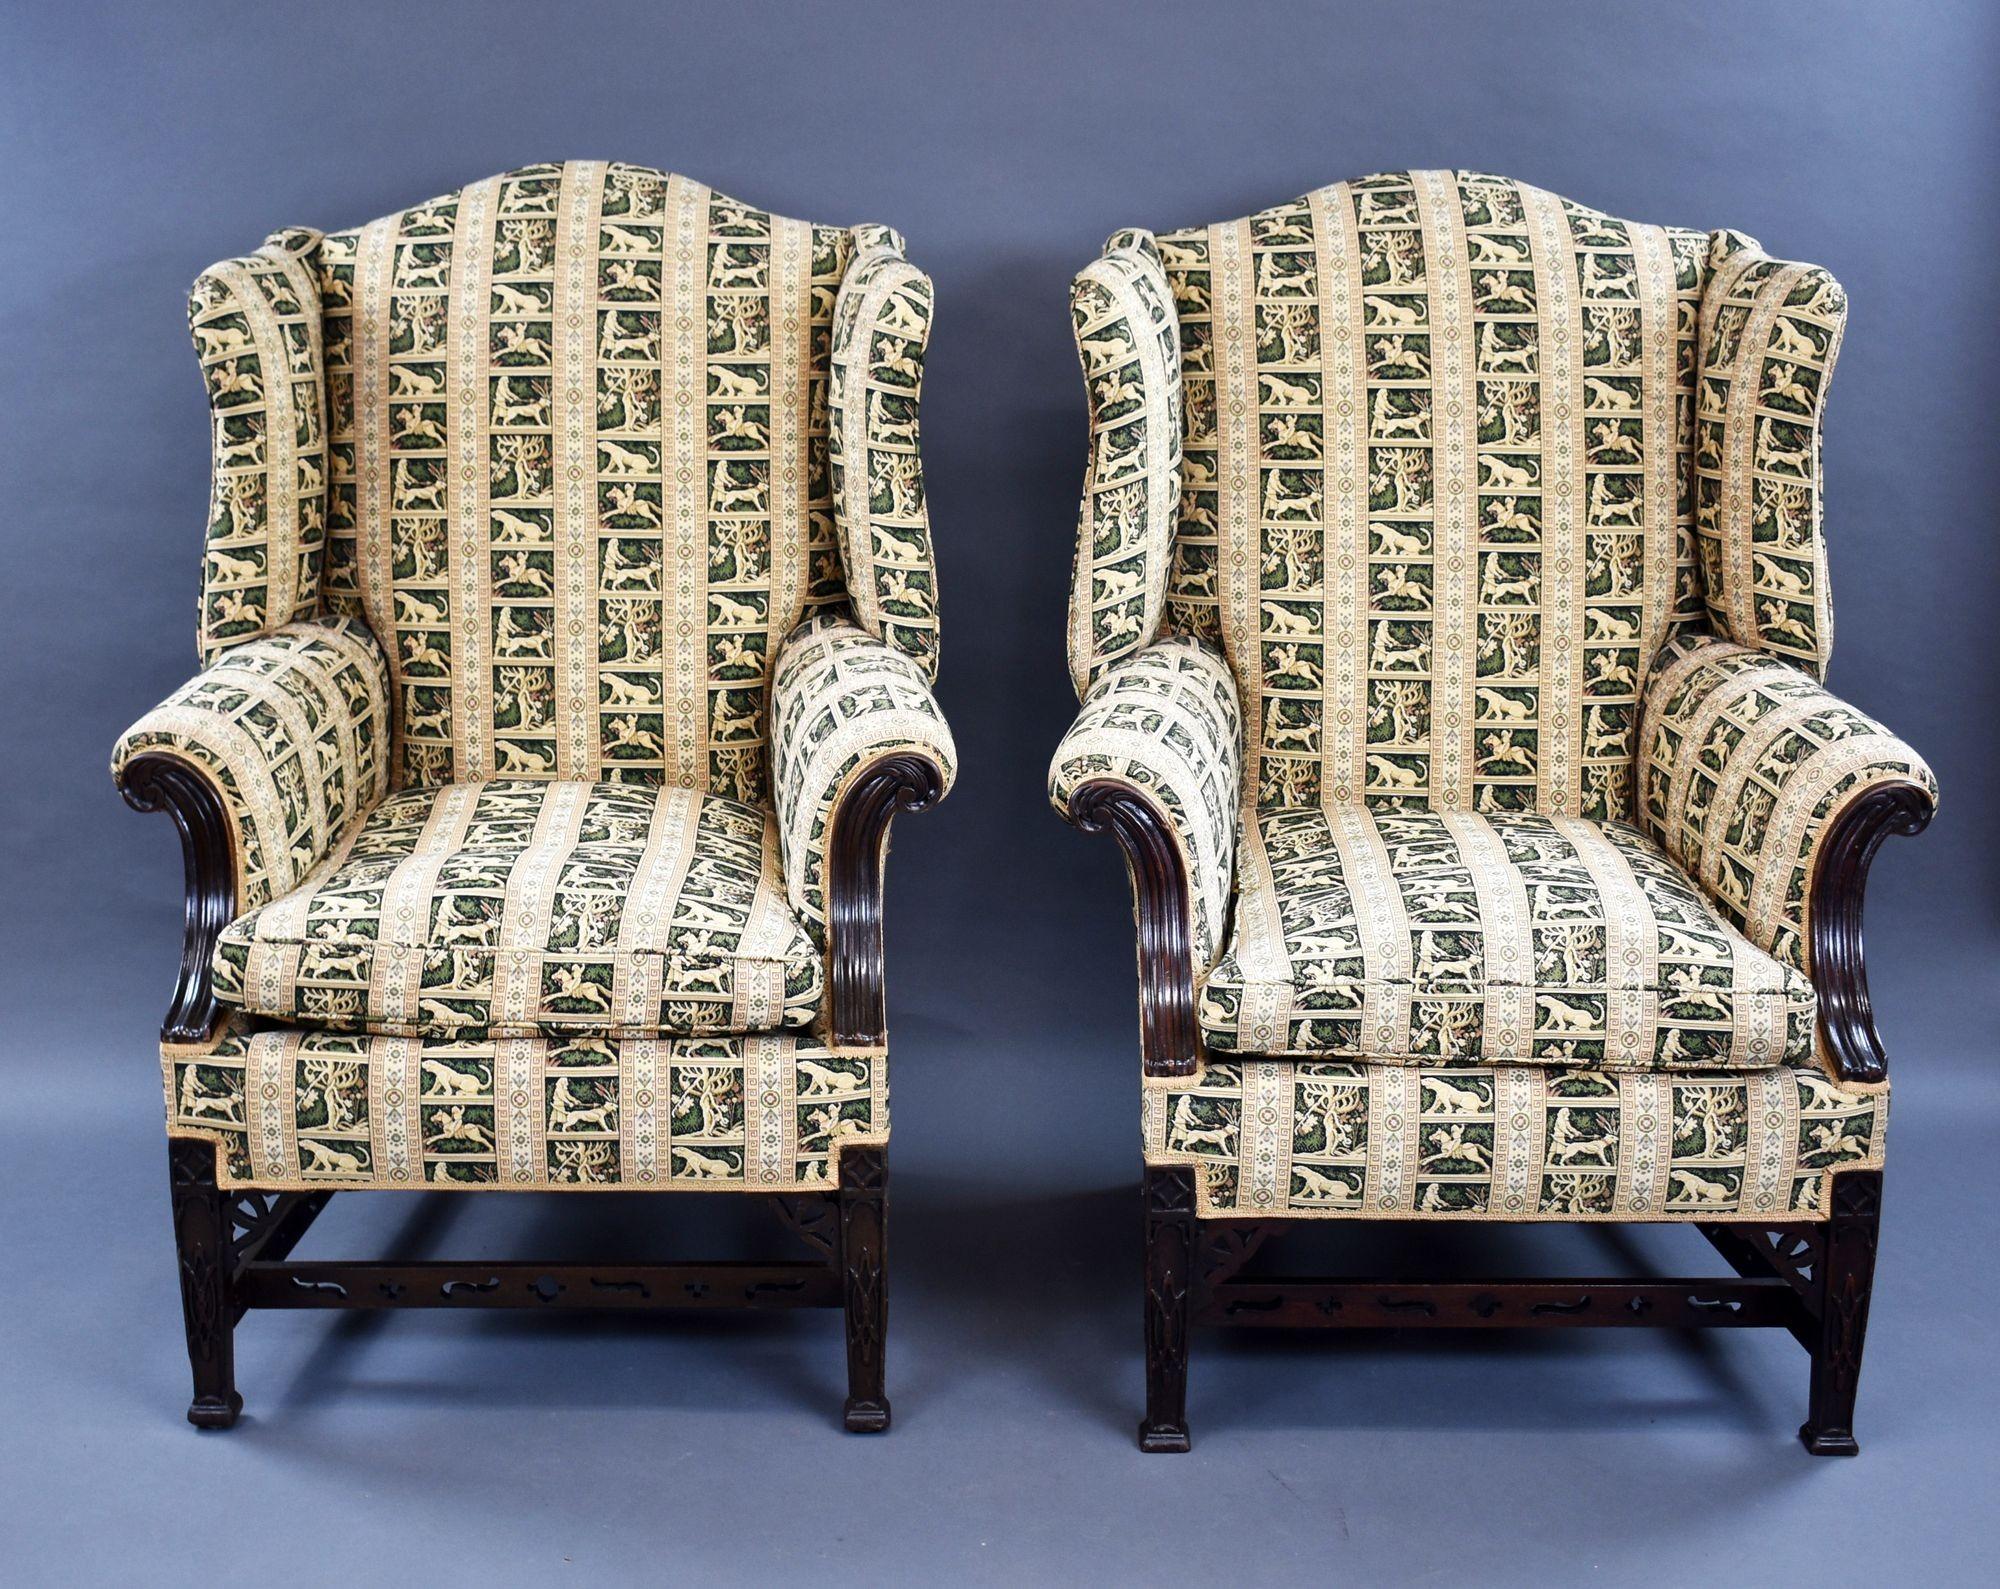 Zum Verkauf steht ein hochwertiges Paar viktorianischer Sessel aus Mahagoni im Chippendale-Stil mit Flügelrücken. Die Stühle sind mit einem feinen Tapisserie-Stoff gepolstert und stehen auf geschnitzten Beinen im Chippendale-Stil, die durch Streben